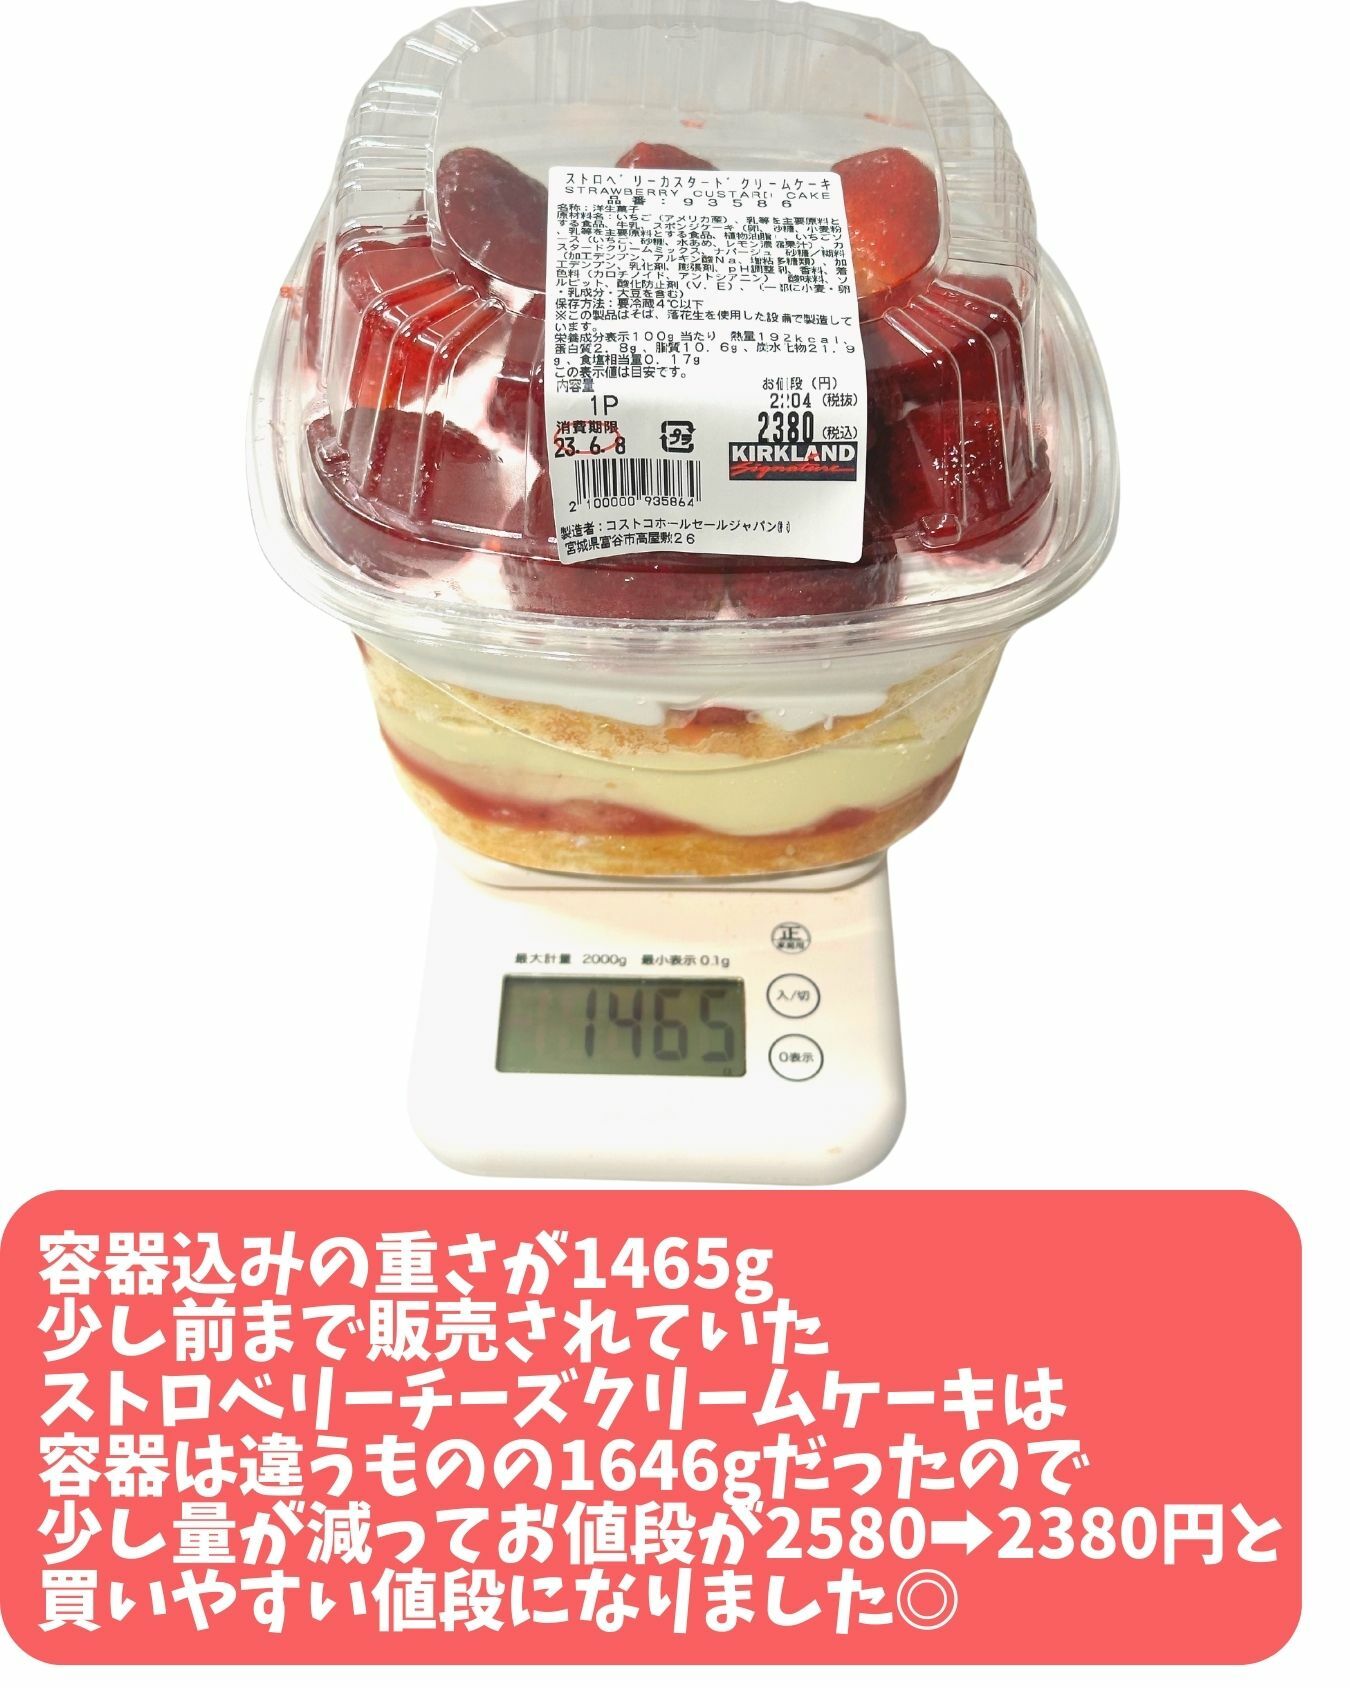 【コストコ】新商品ストロベリーカスタードクリームケーキ　重さ